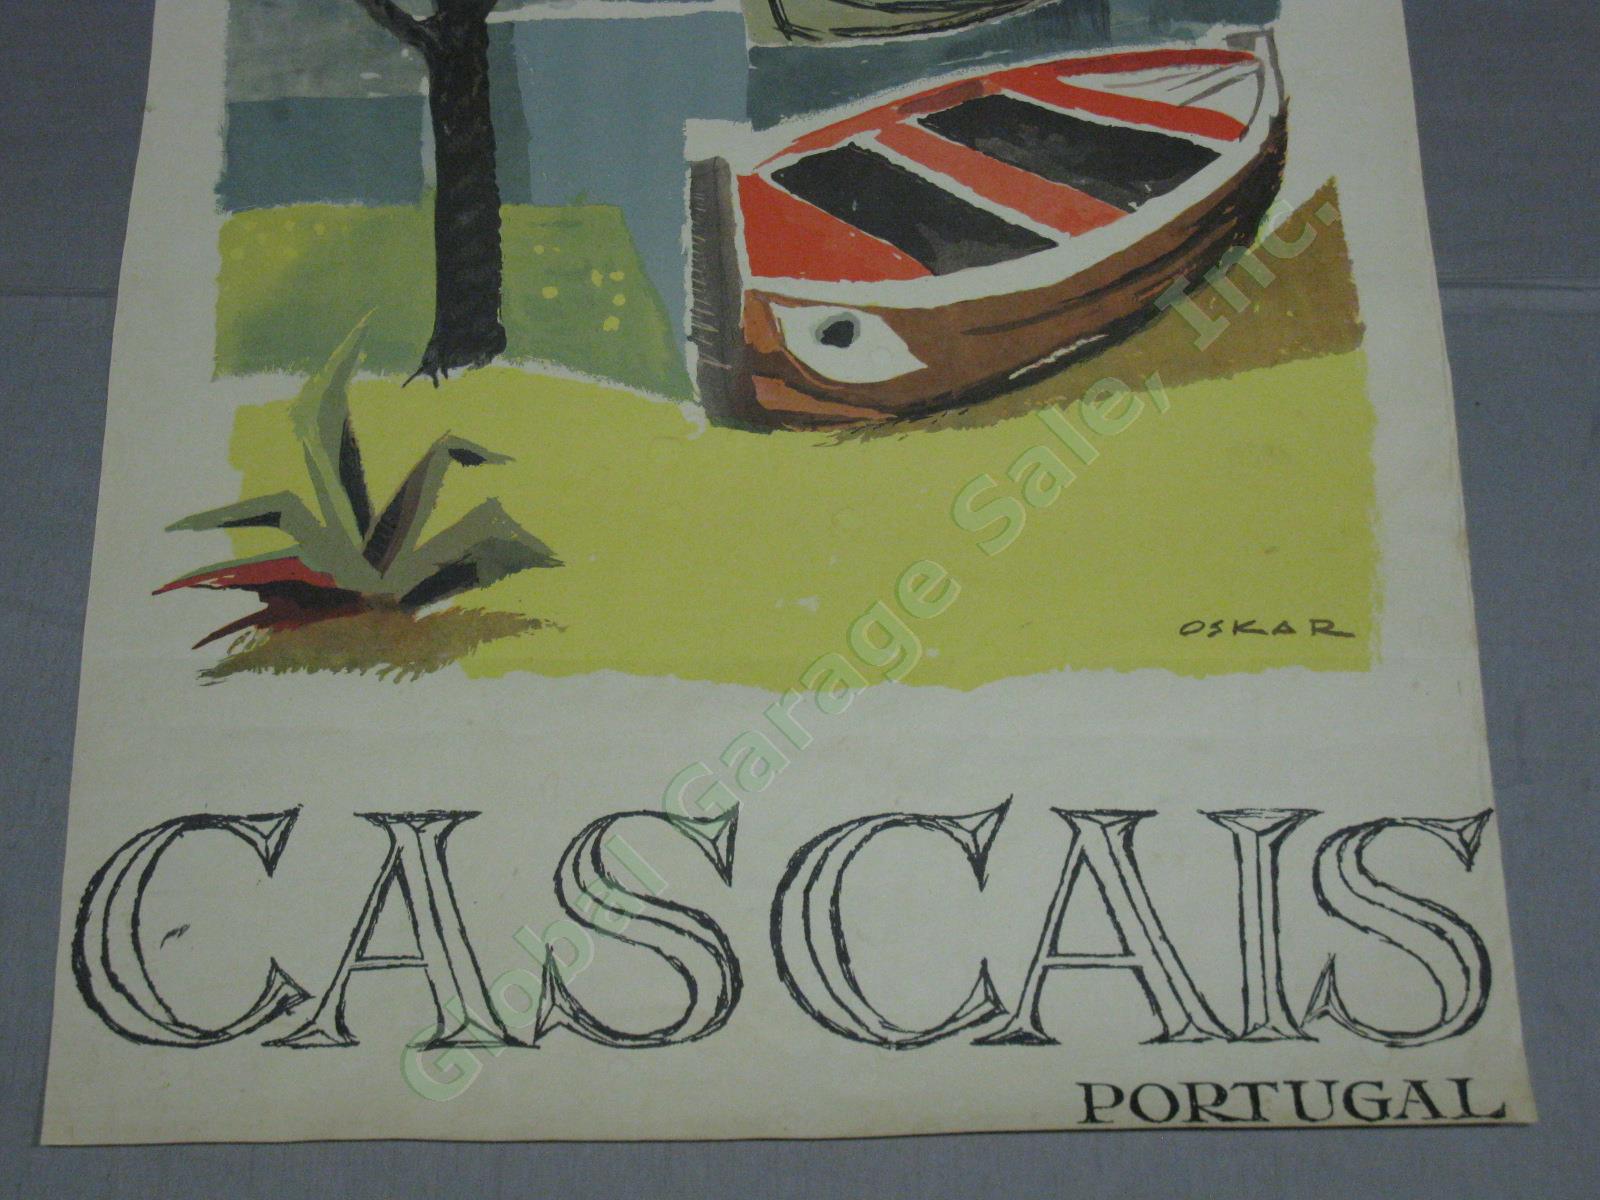 Vtg Cascais Portugal Travel Tourism Poster Oskar Pinto Lobo 1950s 1960s No Res! 2